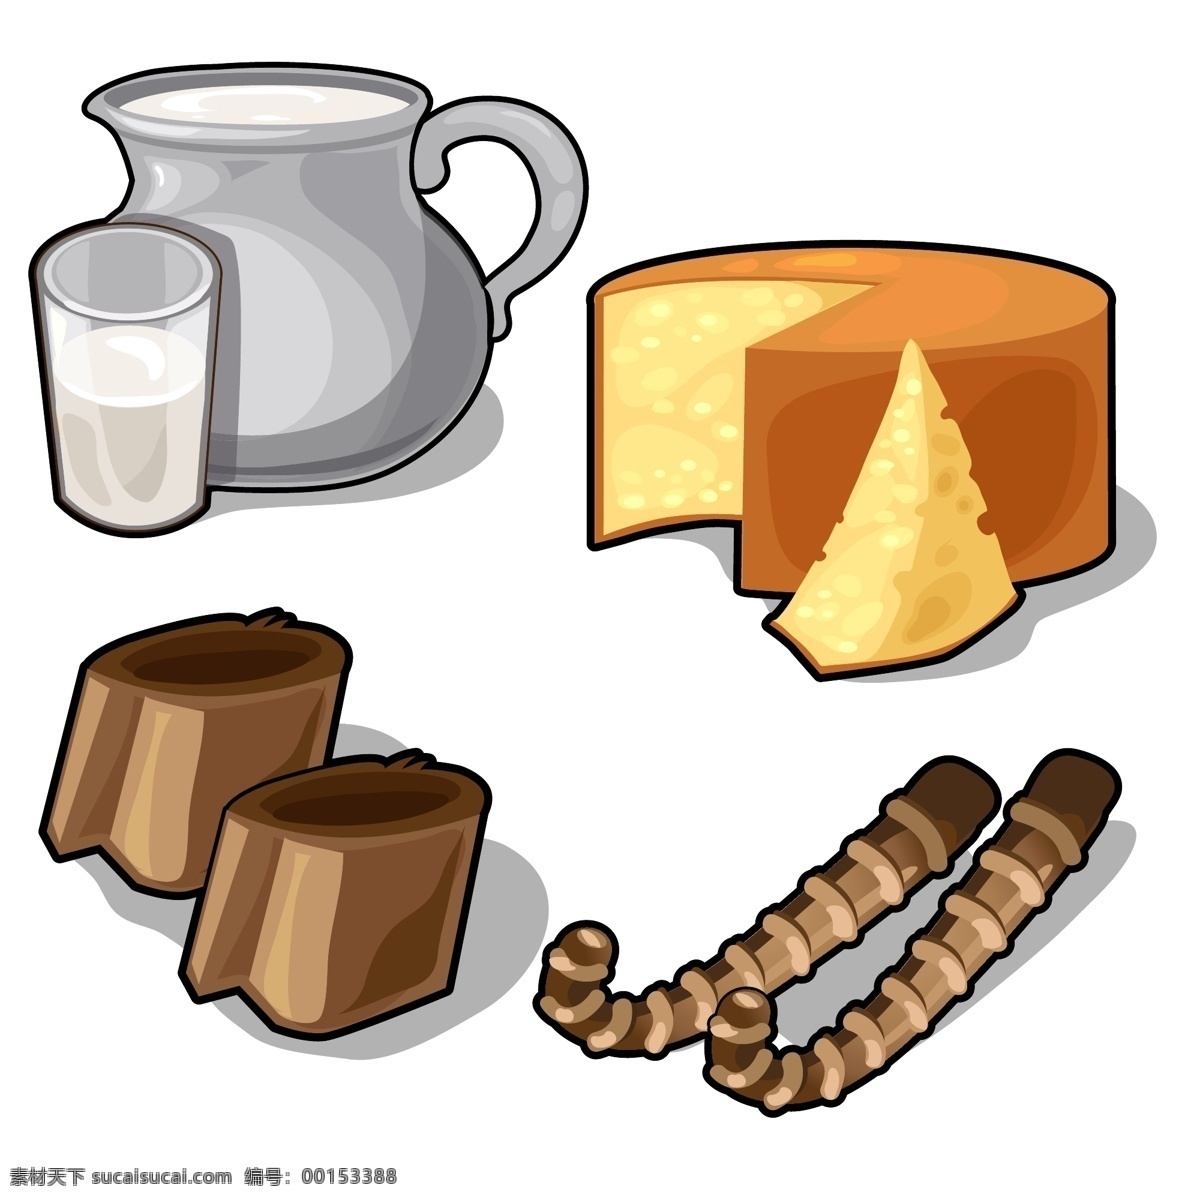 牛奶 巧克力 奶酪 卡通牛奶 卡通美食漫画 卡通食物 美味 美食插画 餐饮美食 生活百科 矢量素材